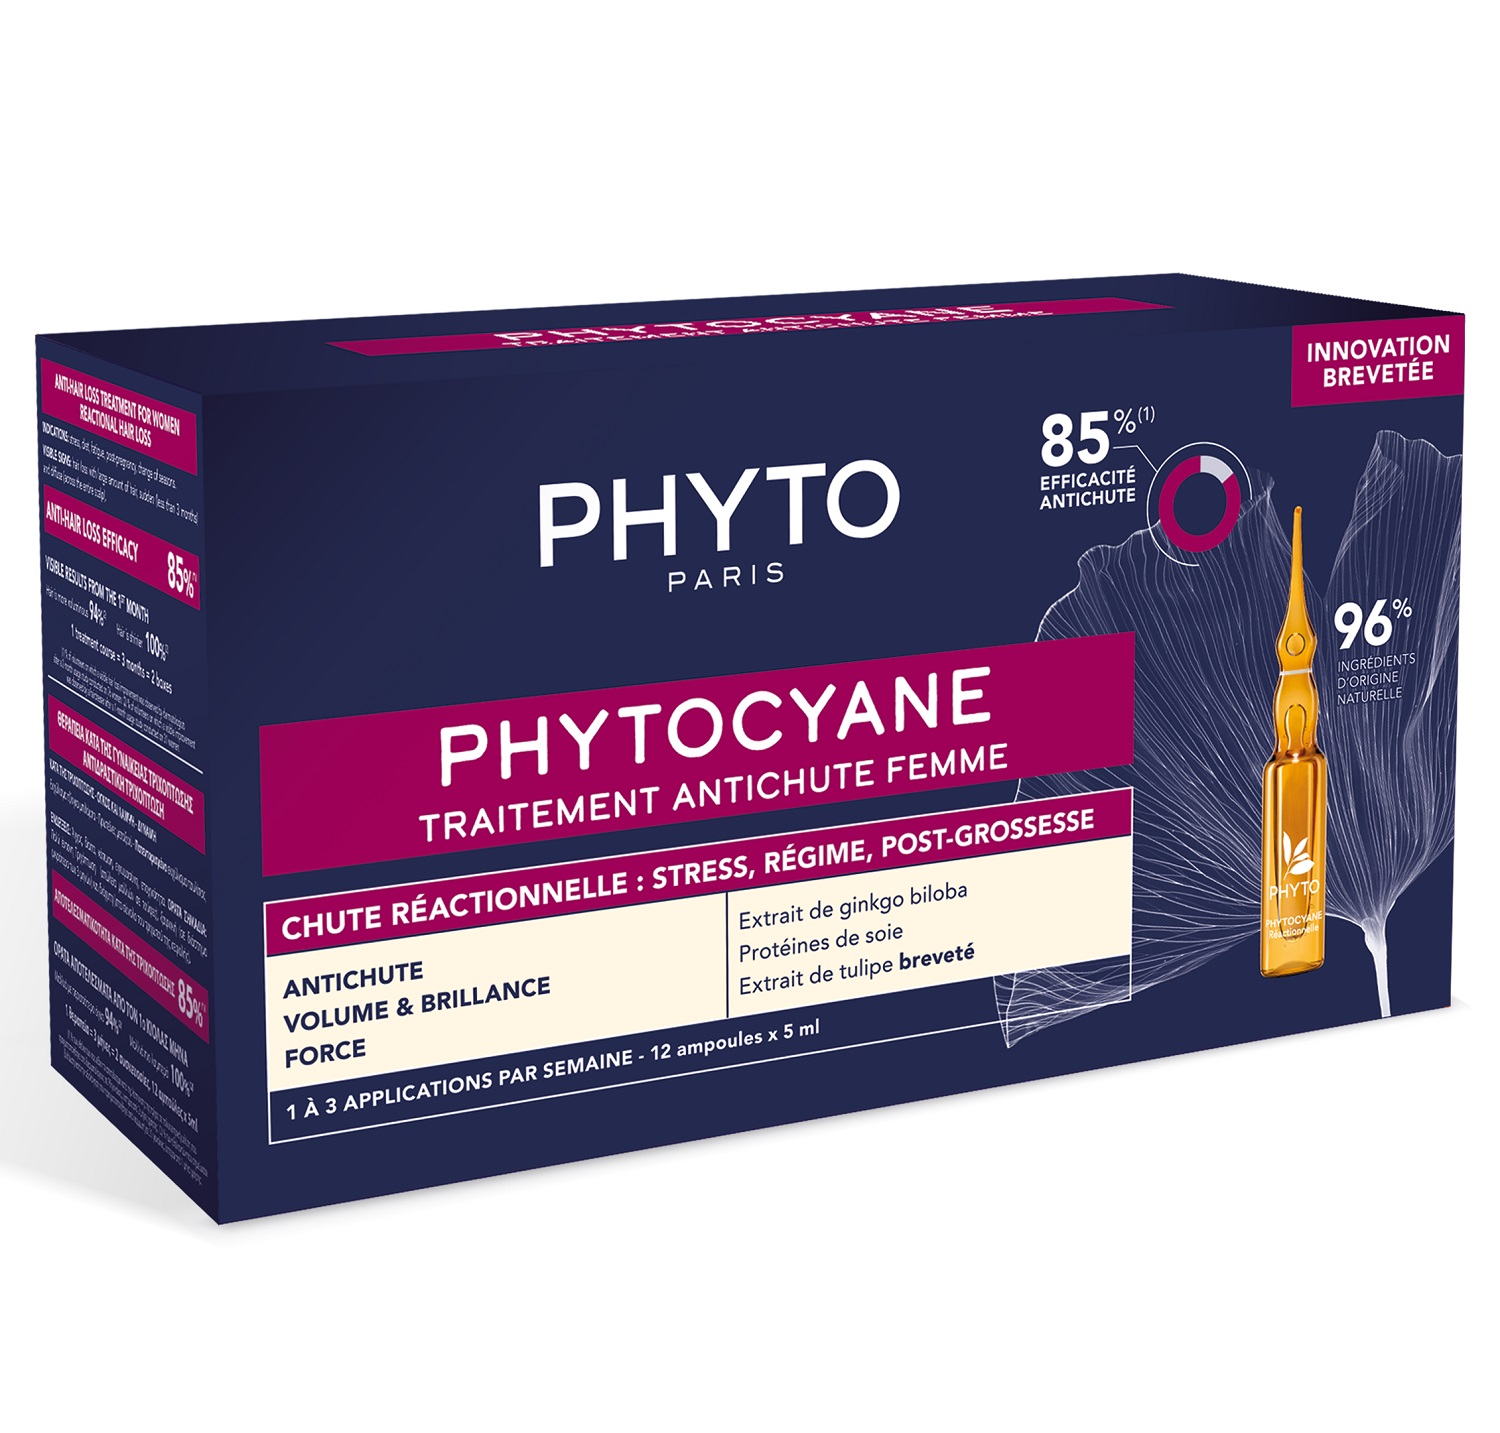 Phyto Сыворотка против выпадения волос для женщин, 12 ампул х 5 мл (Phyto, Phytocyane) phyto phytocyane средство против выпадения волос для женщин 60 мл